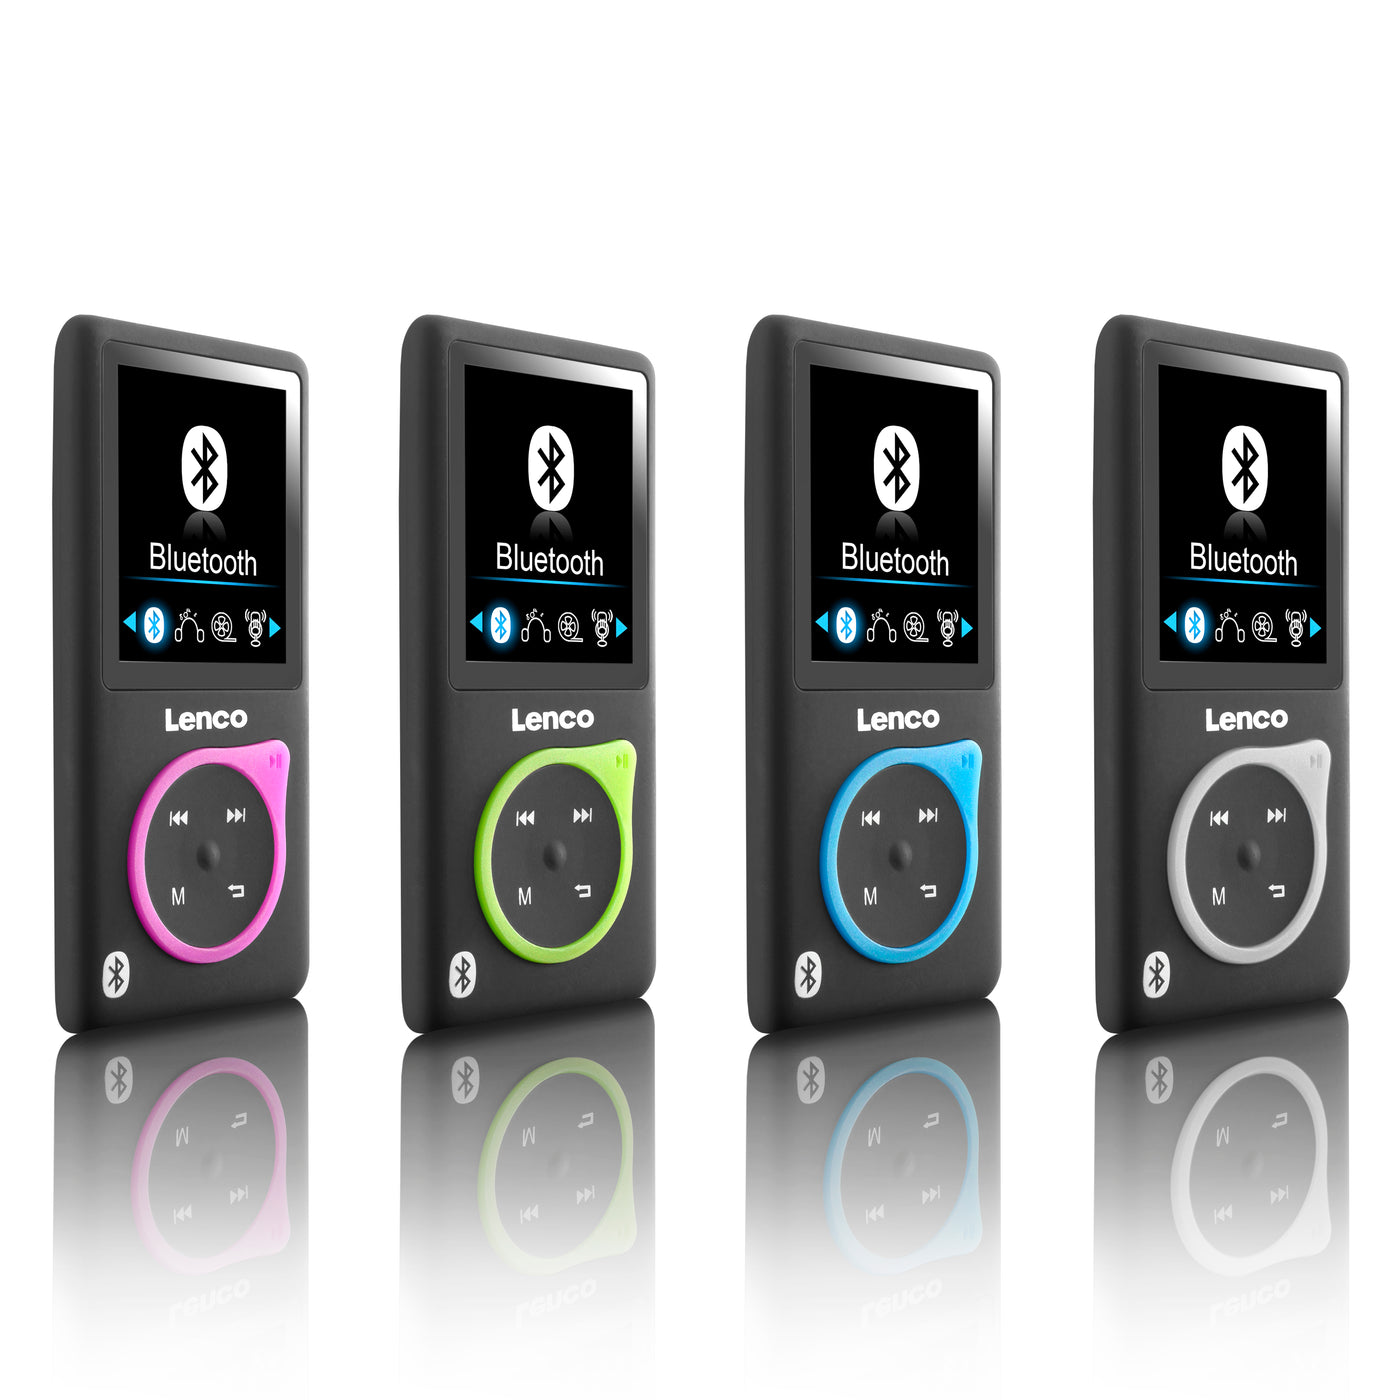 Lenco XEMIO-768 Lime - Lecteur MP3/MP4 avec Bluetooth® et carte micro SD de 8 Go - Vert